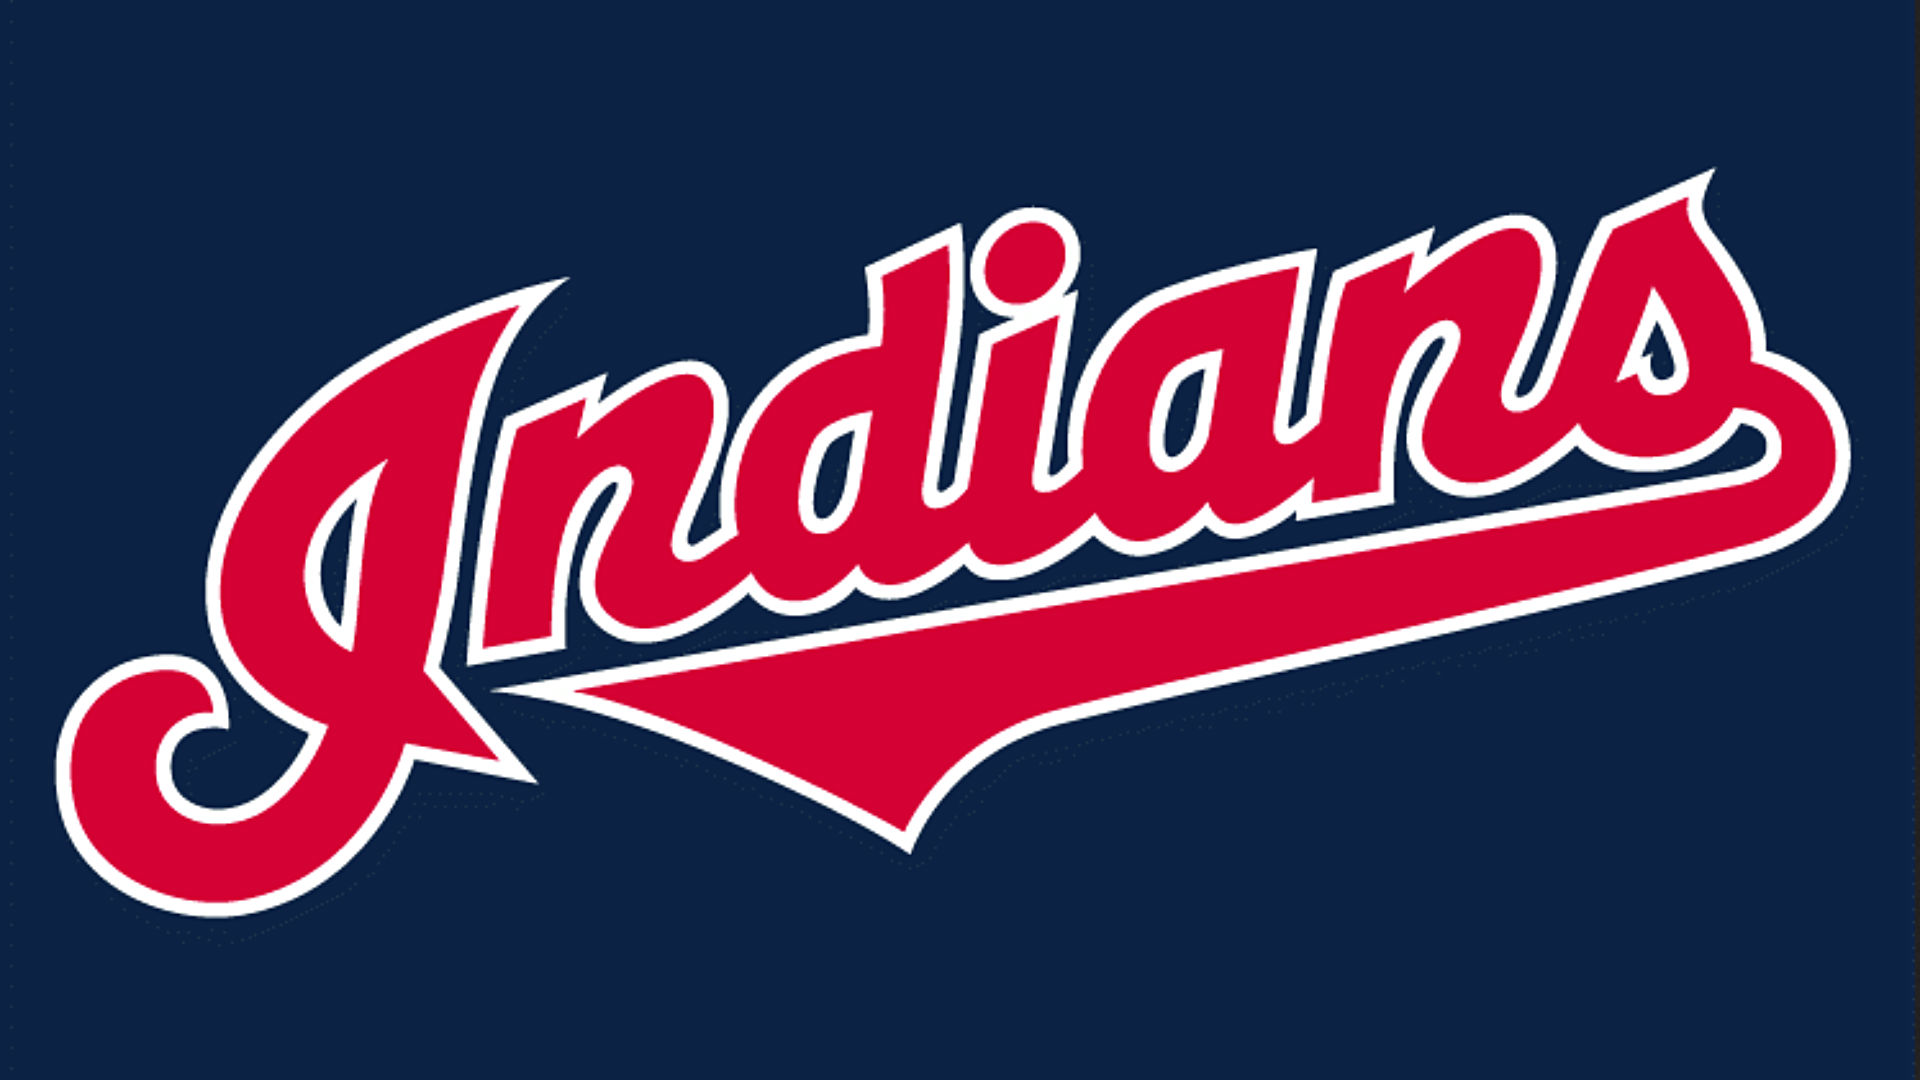 Cleveland Indians Home Uniform - American League (AL) - Chris